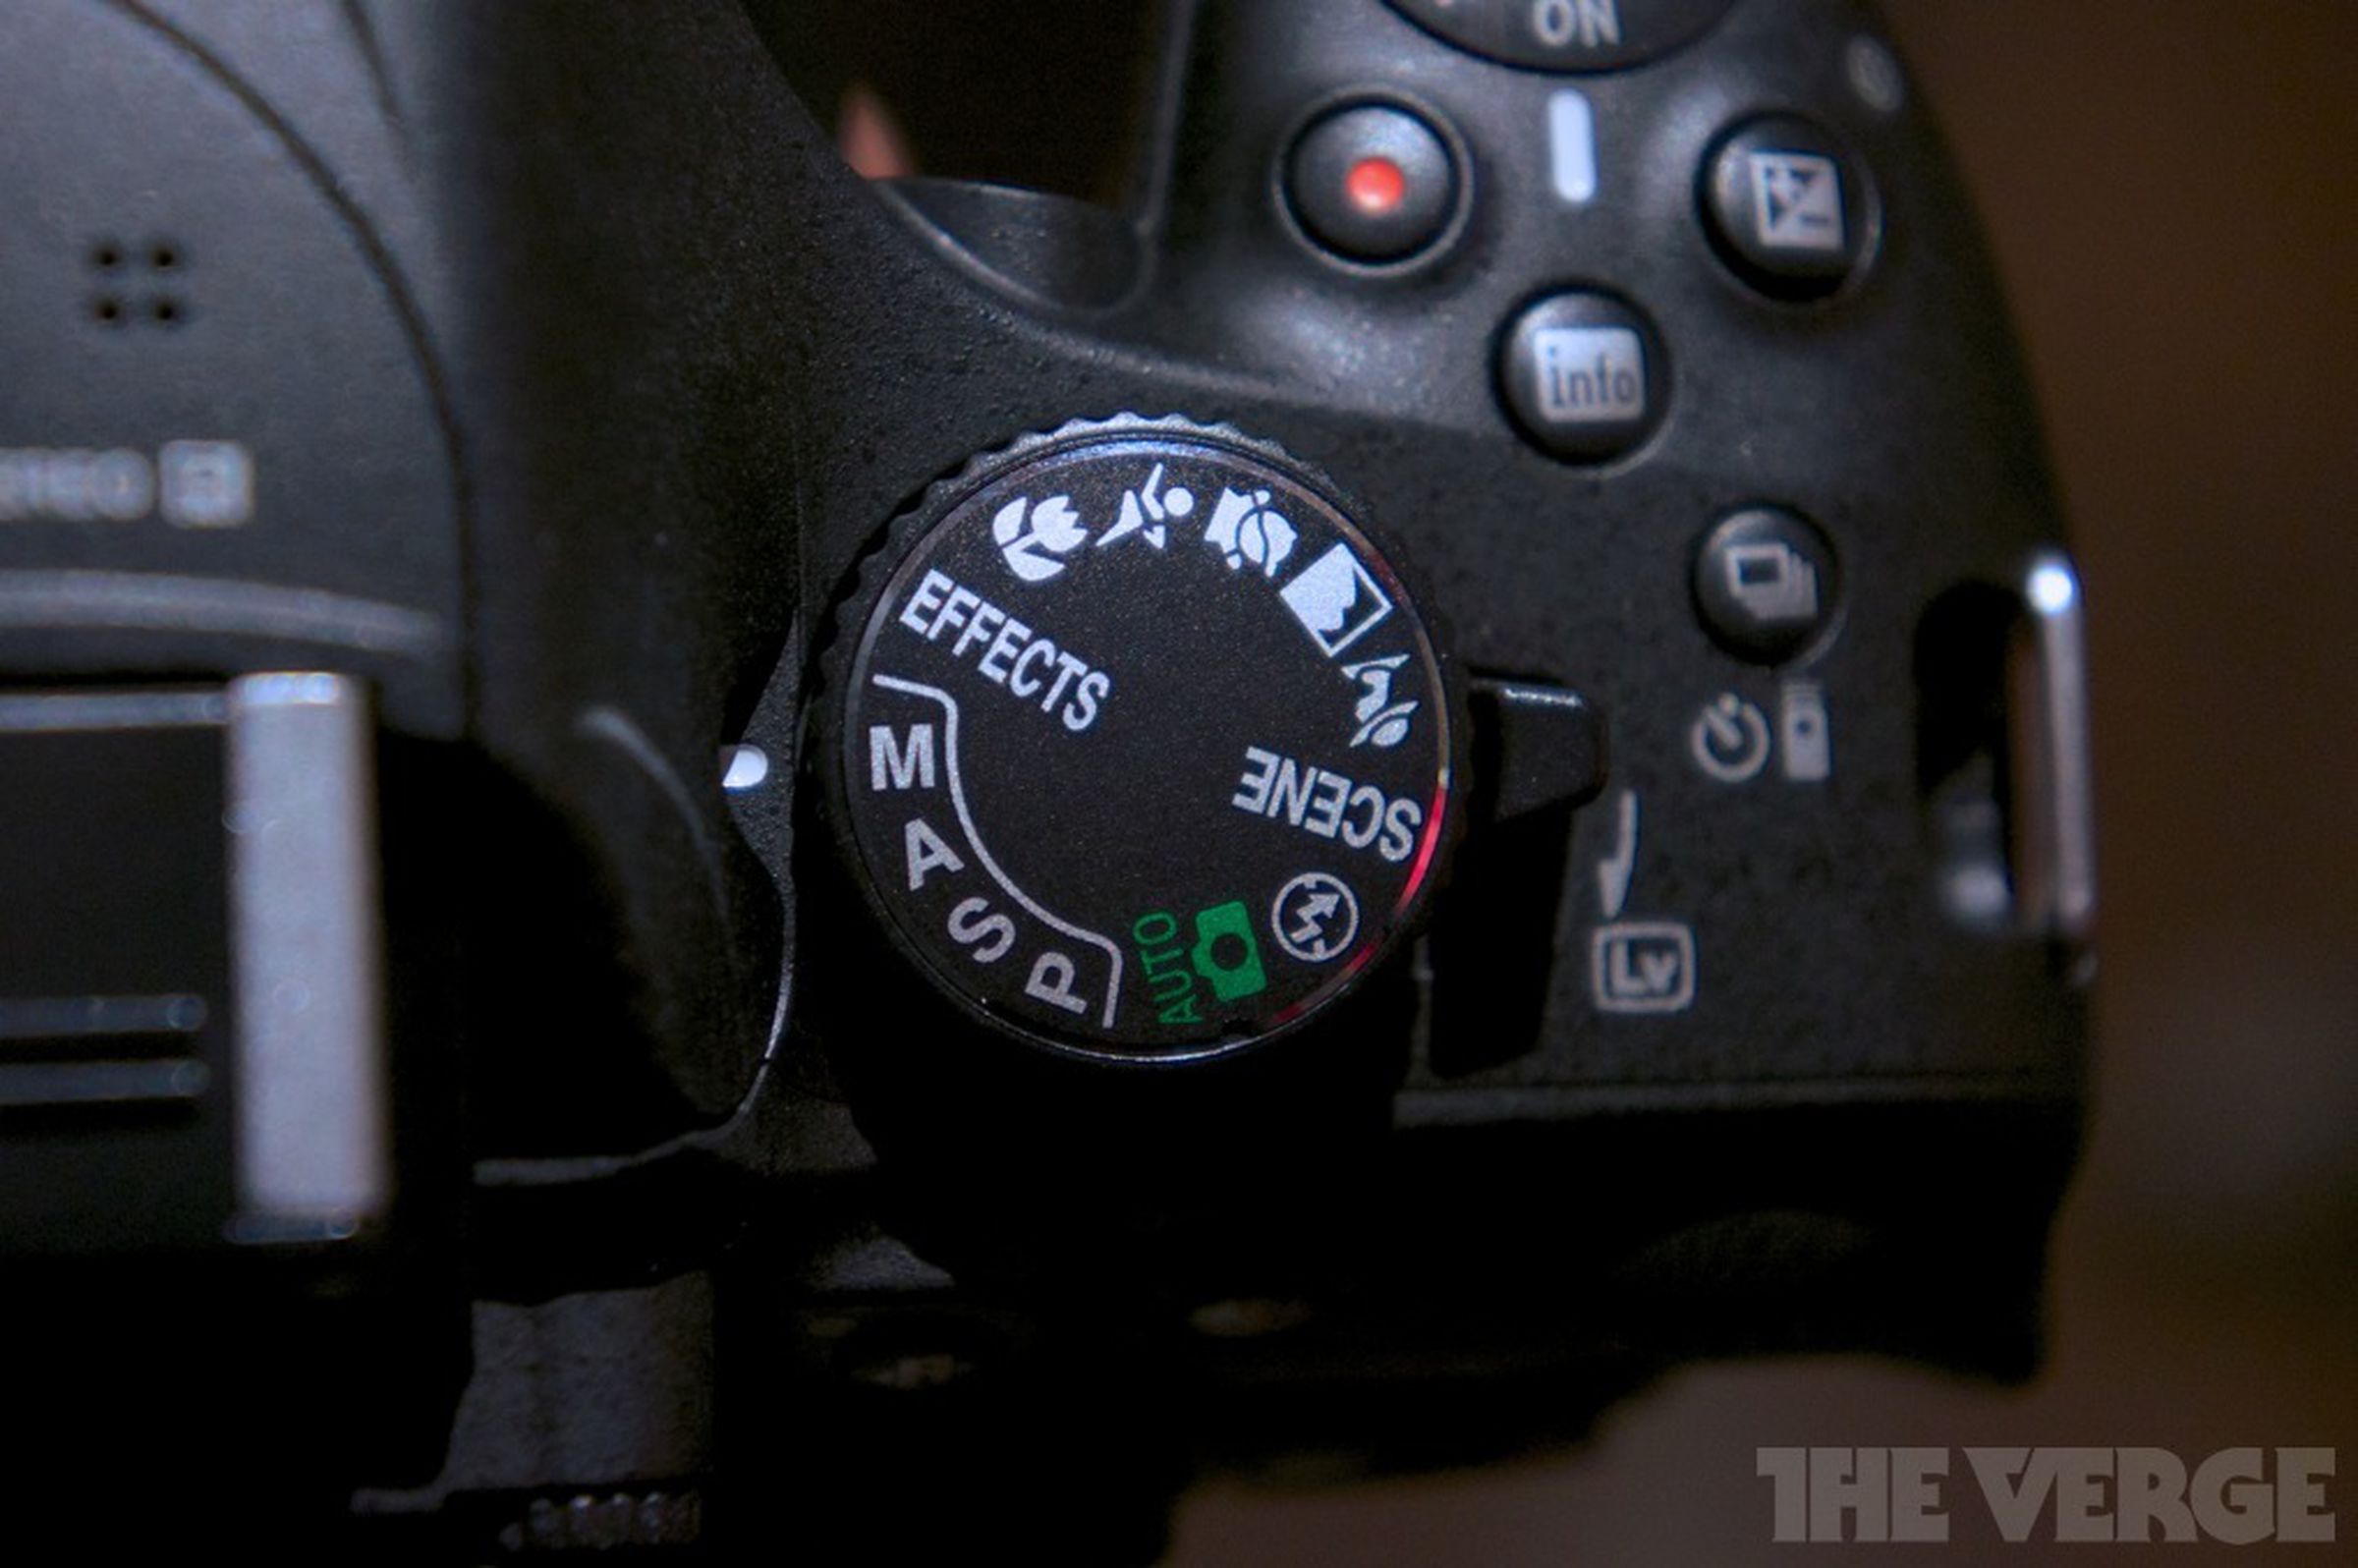 Nikon D5200 hands-on photos